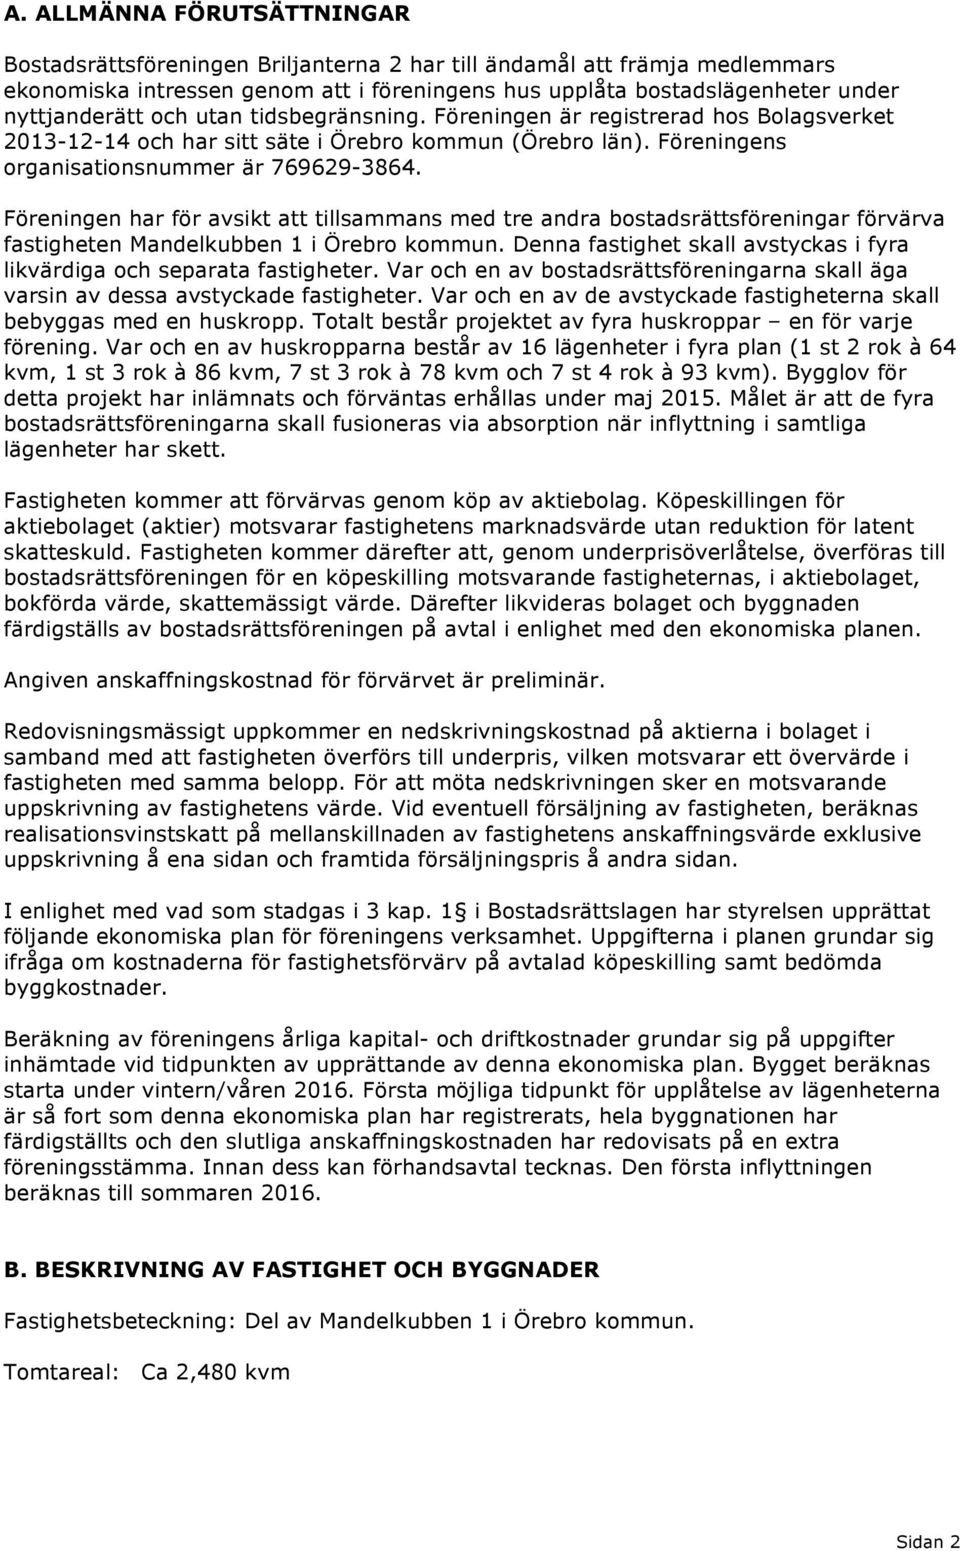 Föreningen har för avsikt att tillsammans med tre andra bostadsrättsföreningar förvärva fastigheten Mandelkubben 1 i Örebro kommun.